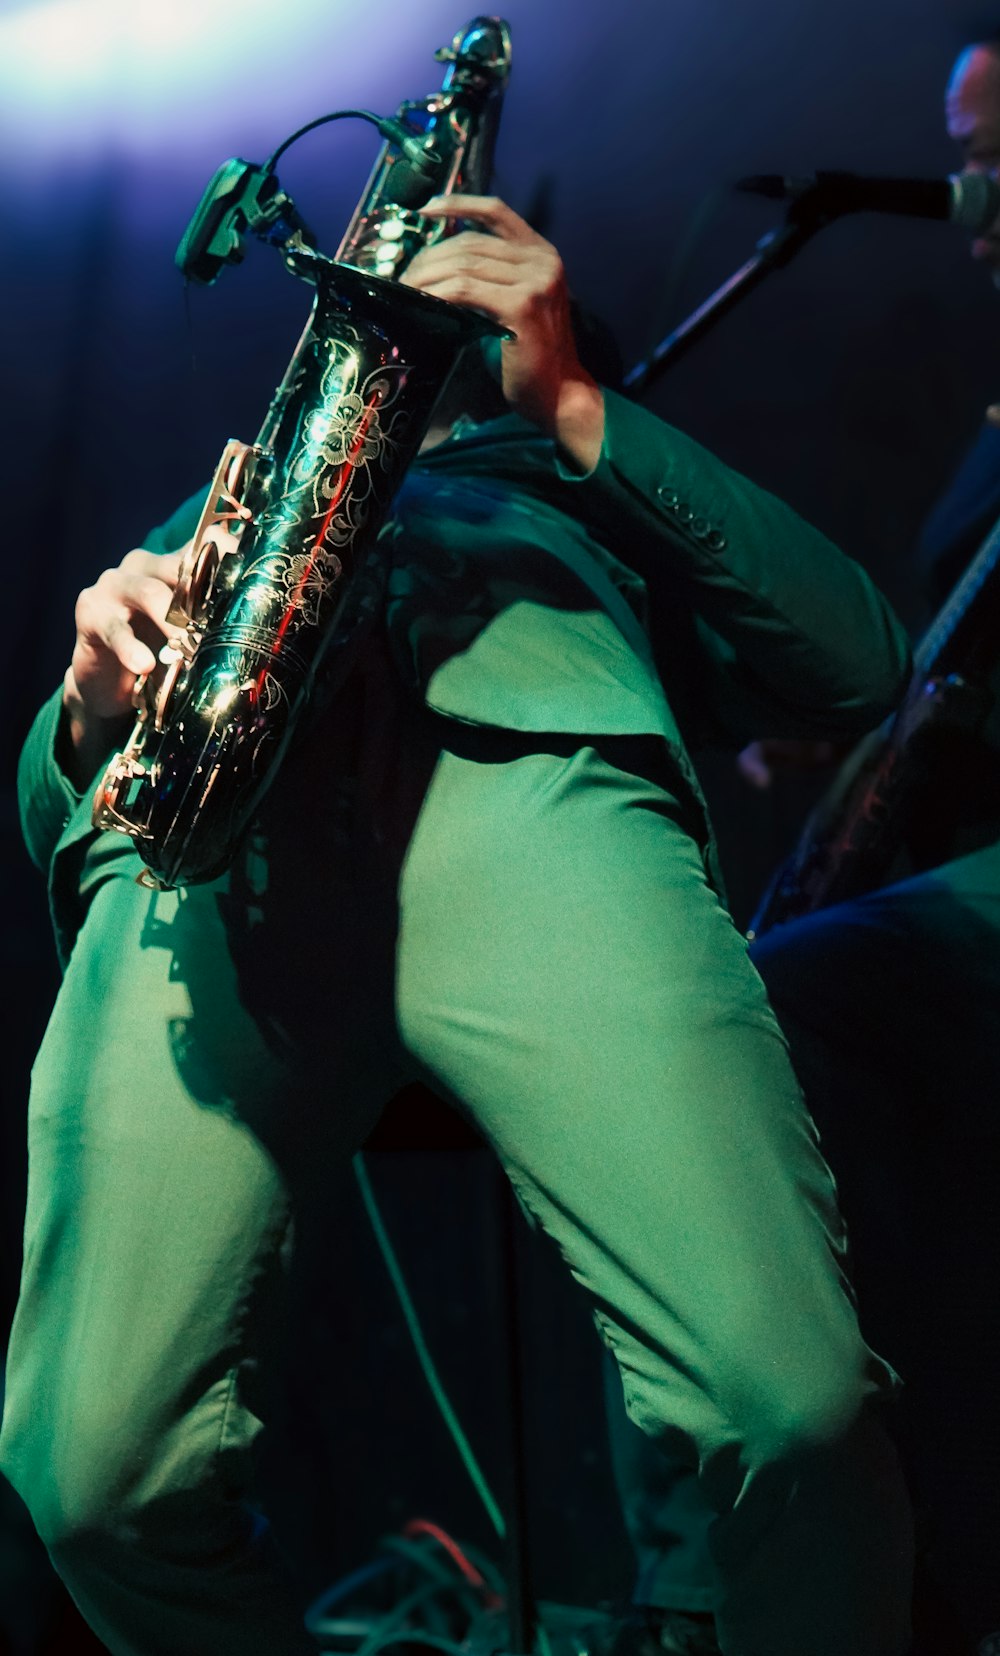 Un hombre tocando un saxofón en un escenario